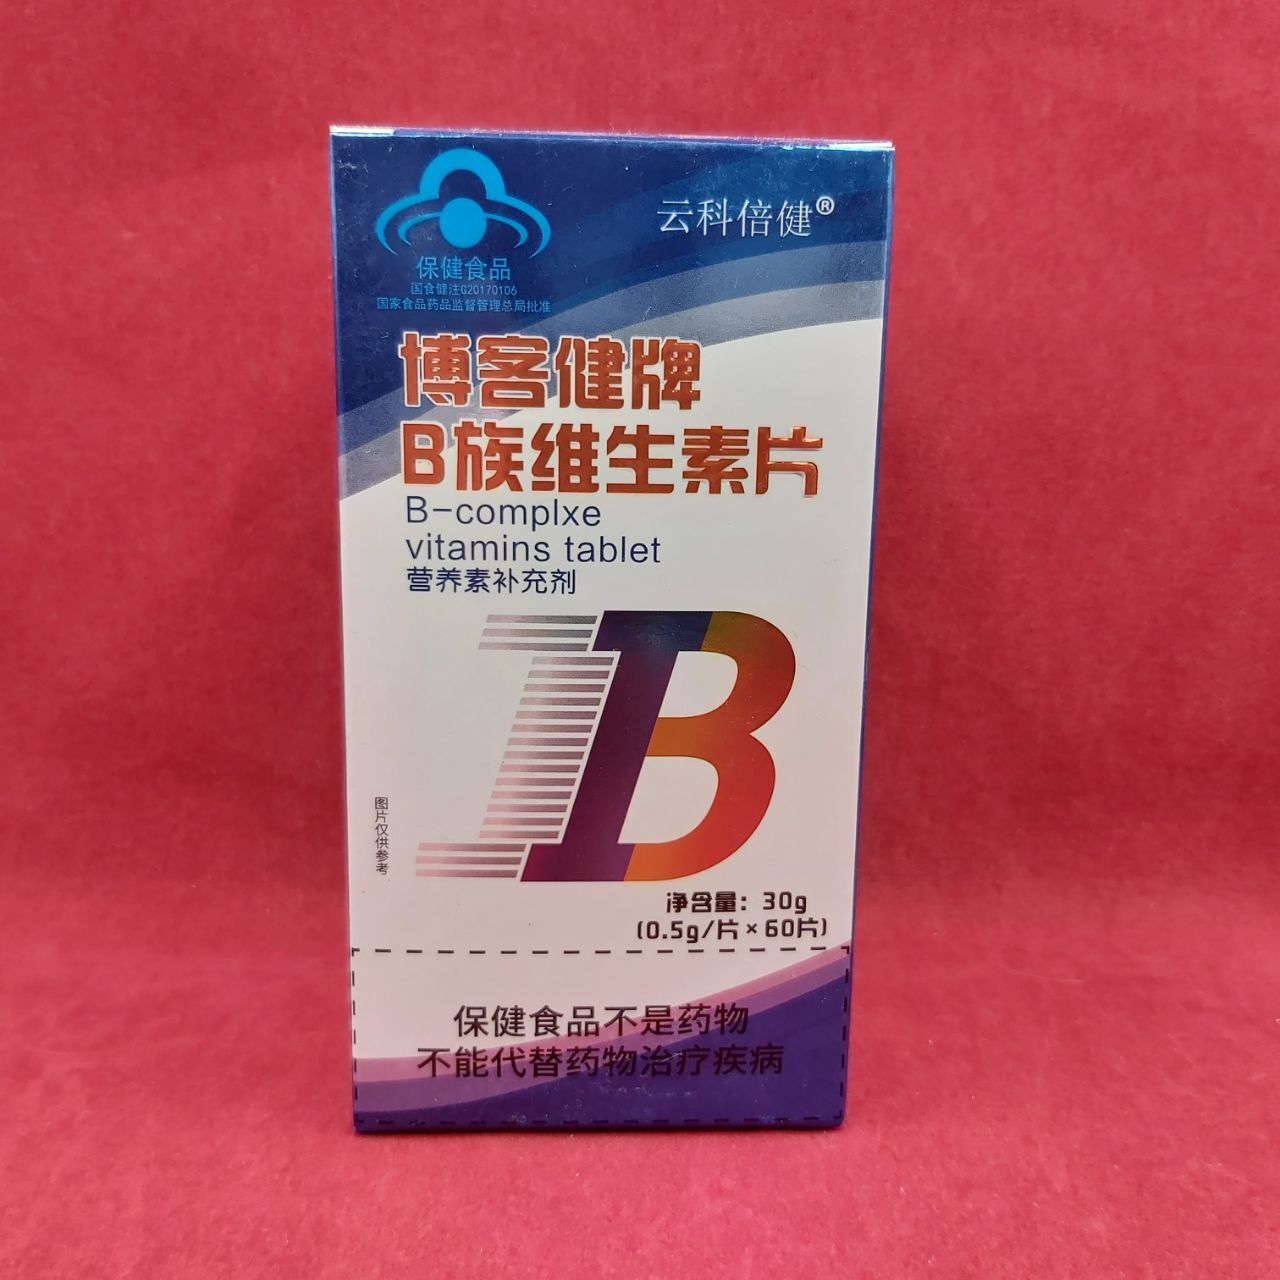 Комплекс витаминов группы B "Юнке Бэйцзянь"